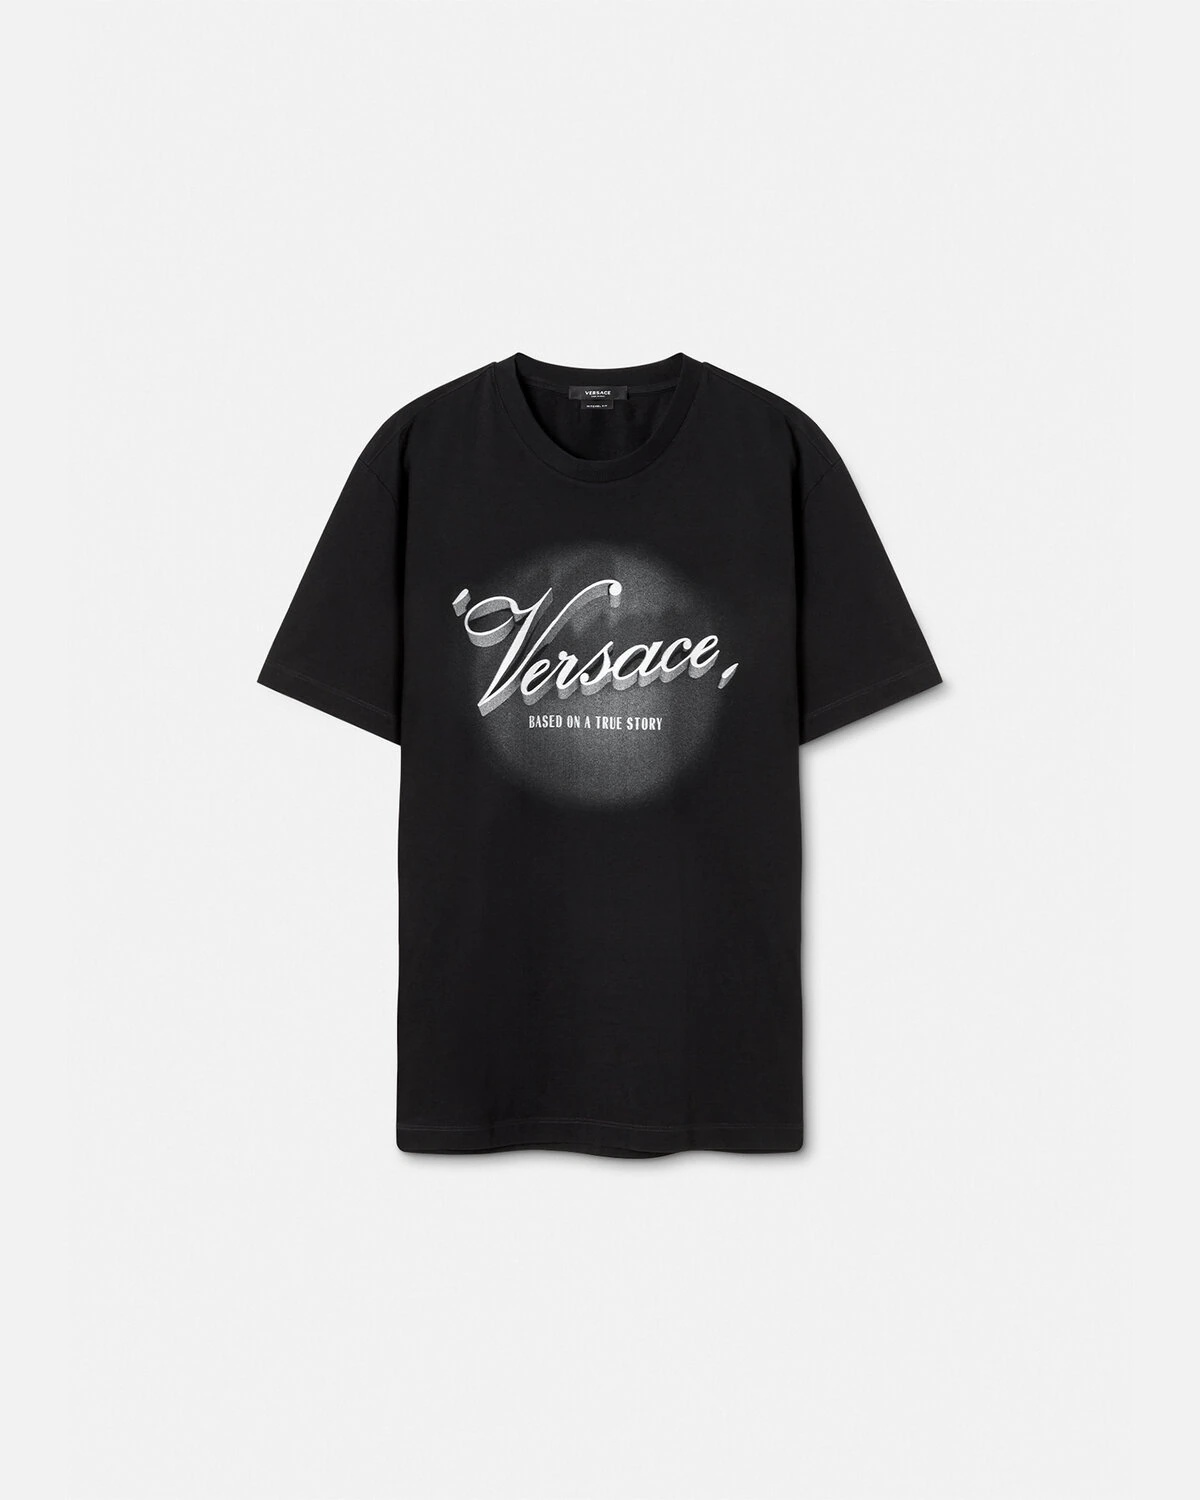 Versace Film Titles T-Shirt - 1